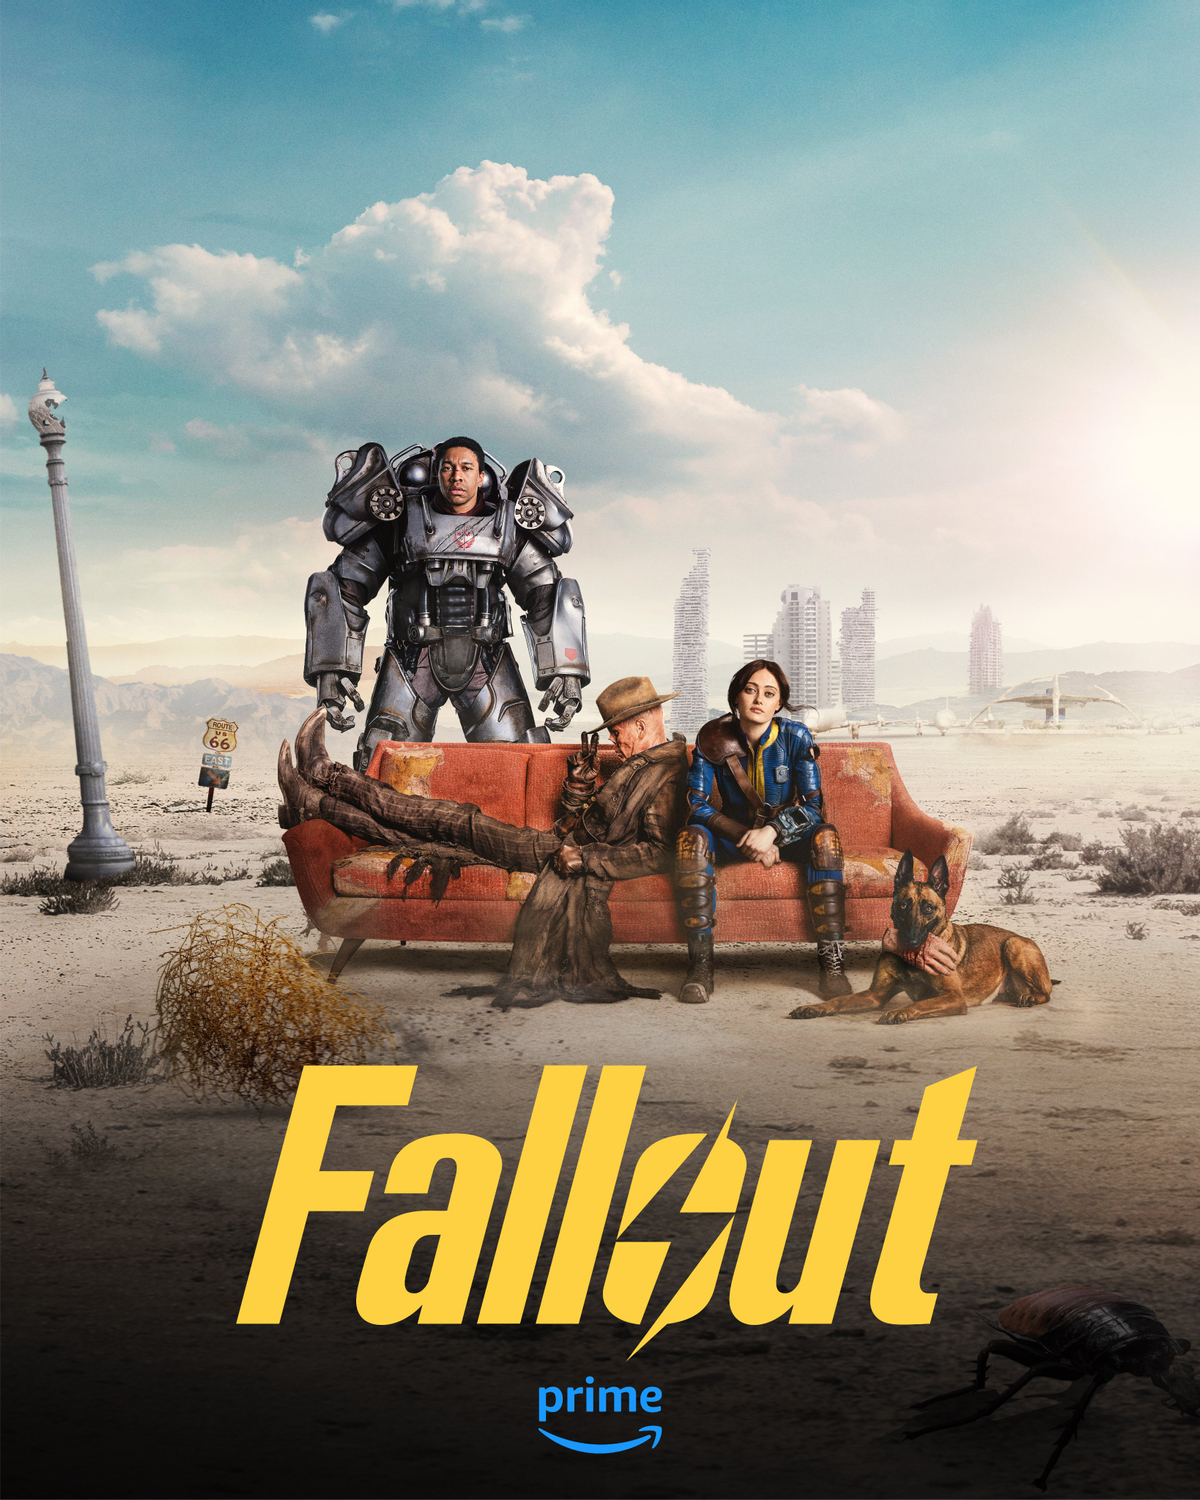 Сериал Fallout получит второй сезон — официально